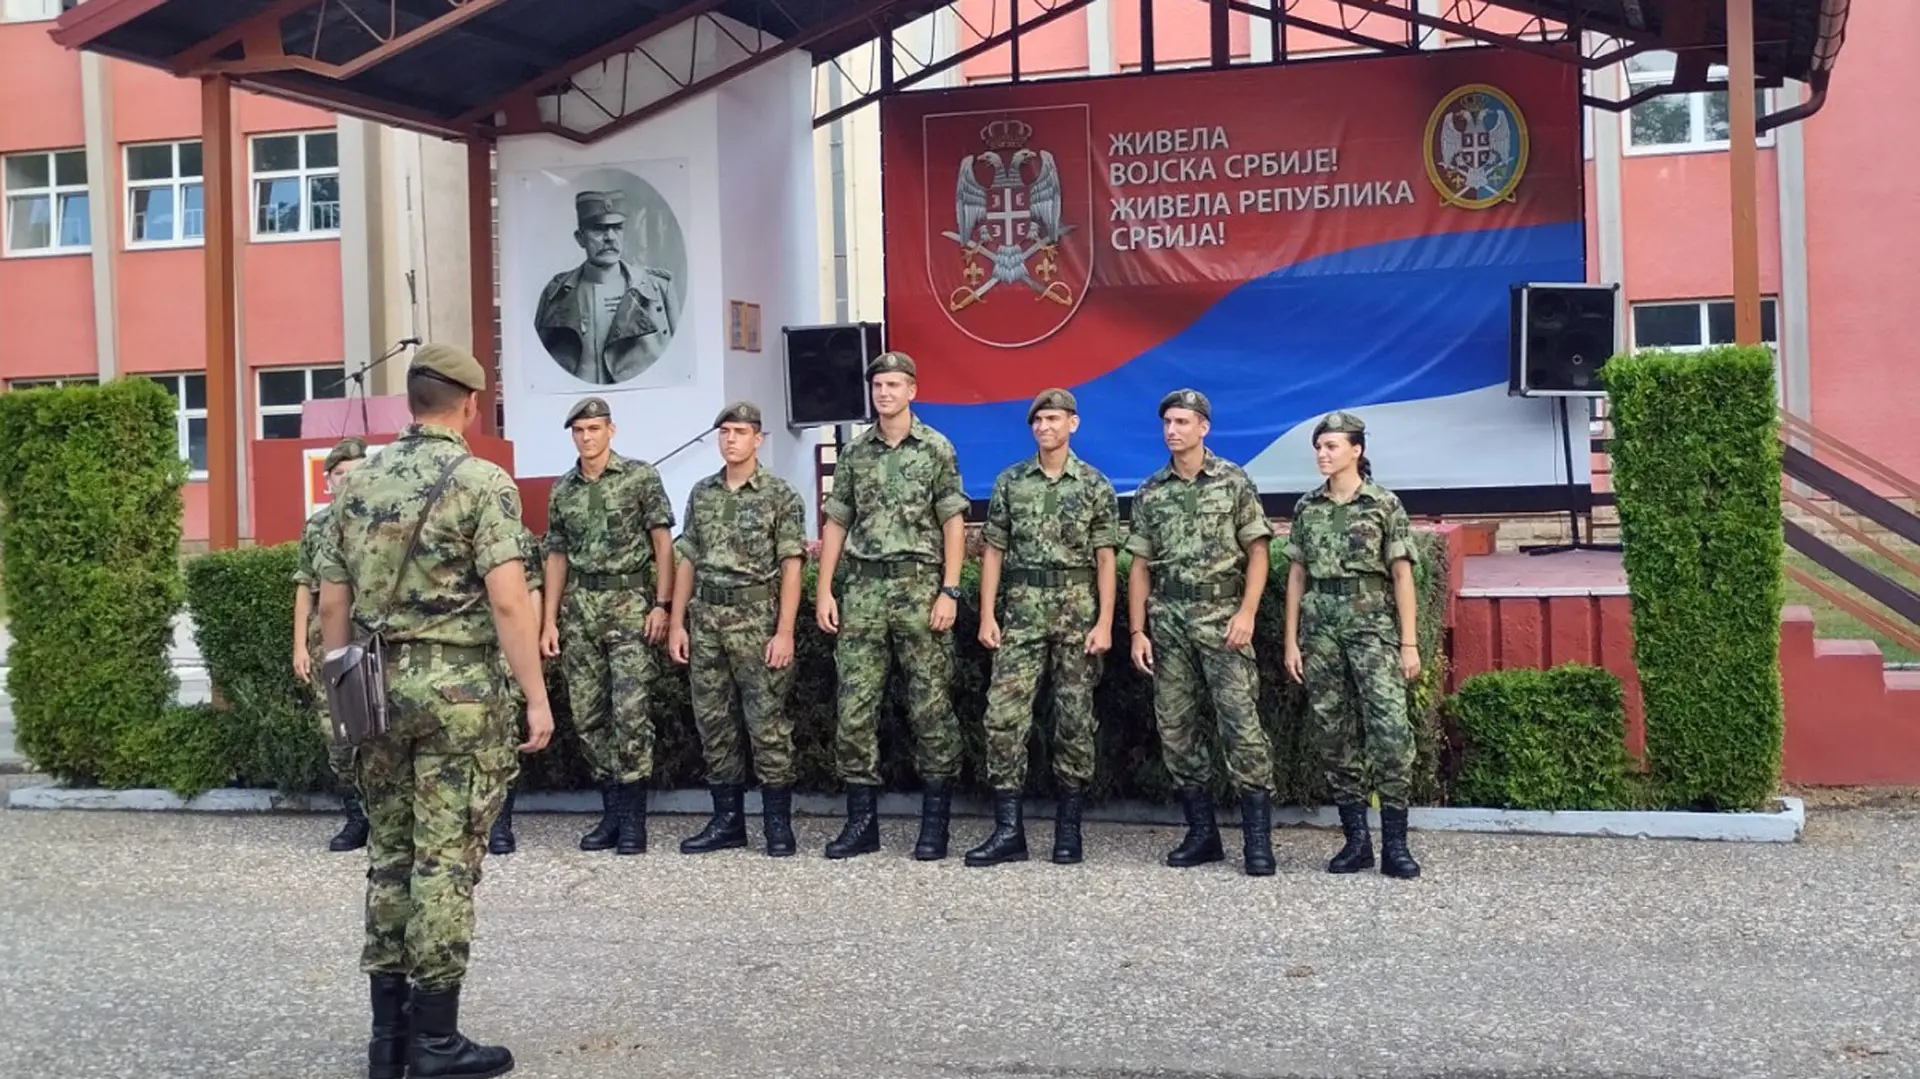 vojska sbije novi vojnici ministarstvo odbrane-64f233496cba5.webp